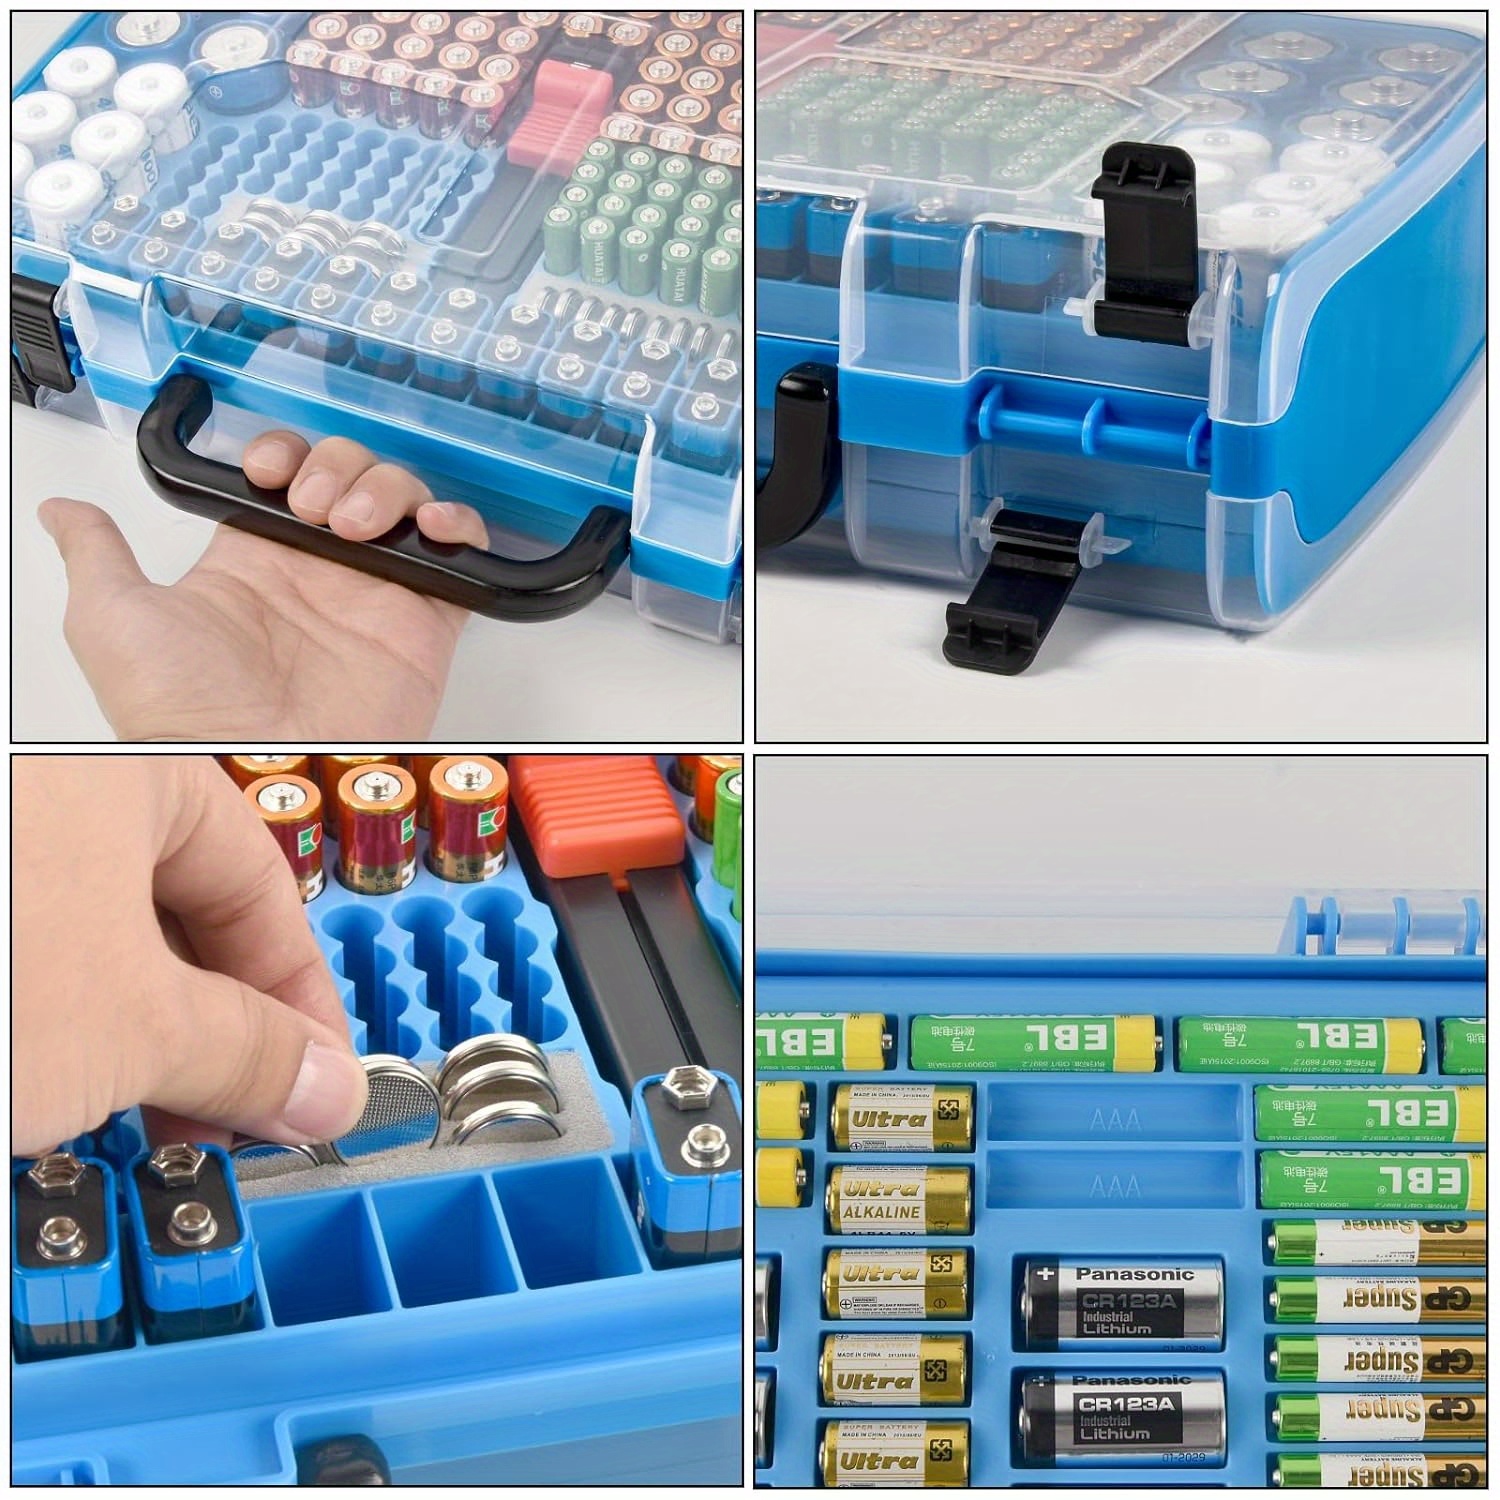 3x Battery Storage Organizer Case Battery Tester Meter for 9V/C/D Batteries  – Gazechimp